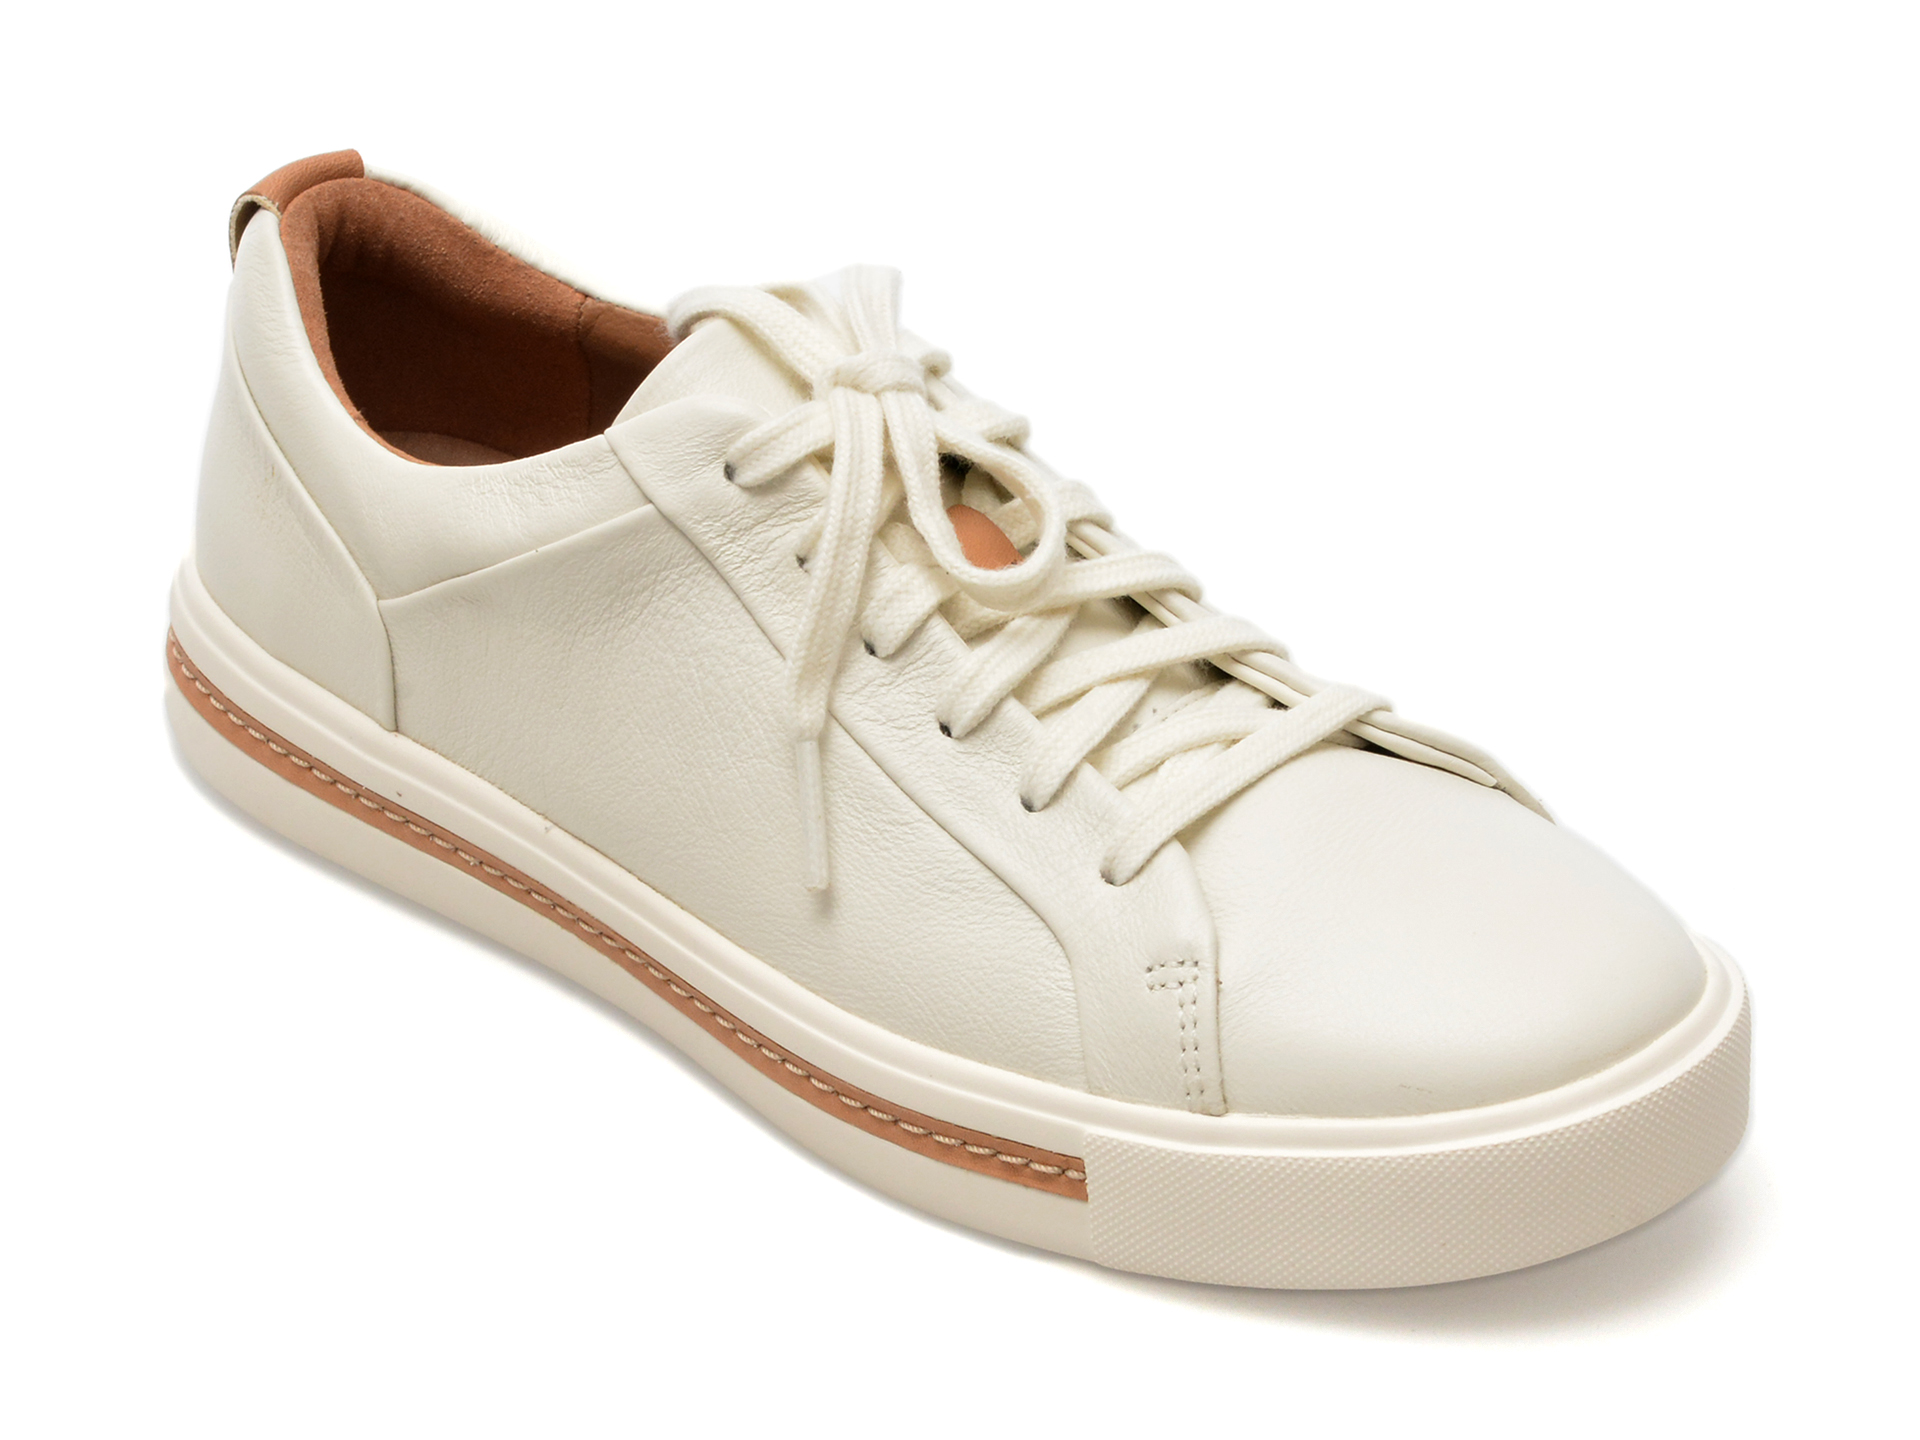 Pantofi CLARKS albi, UNMALA, din piele naturala